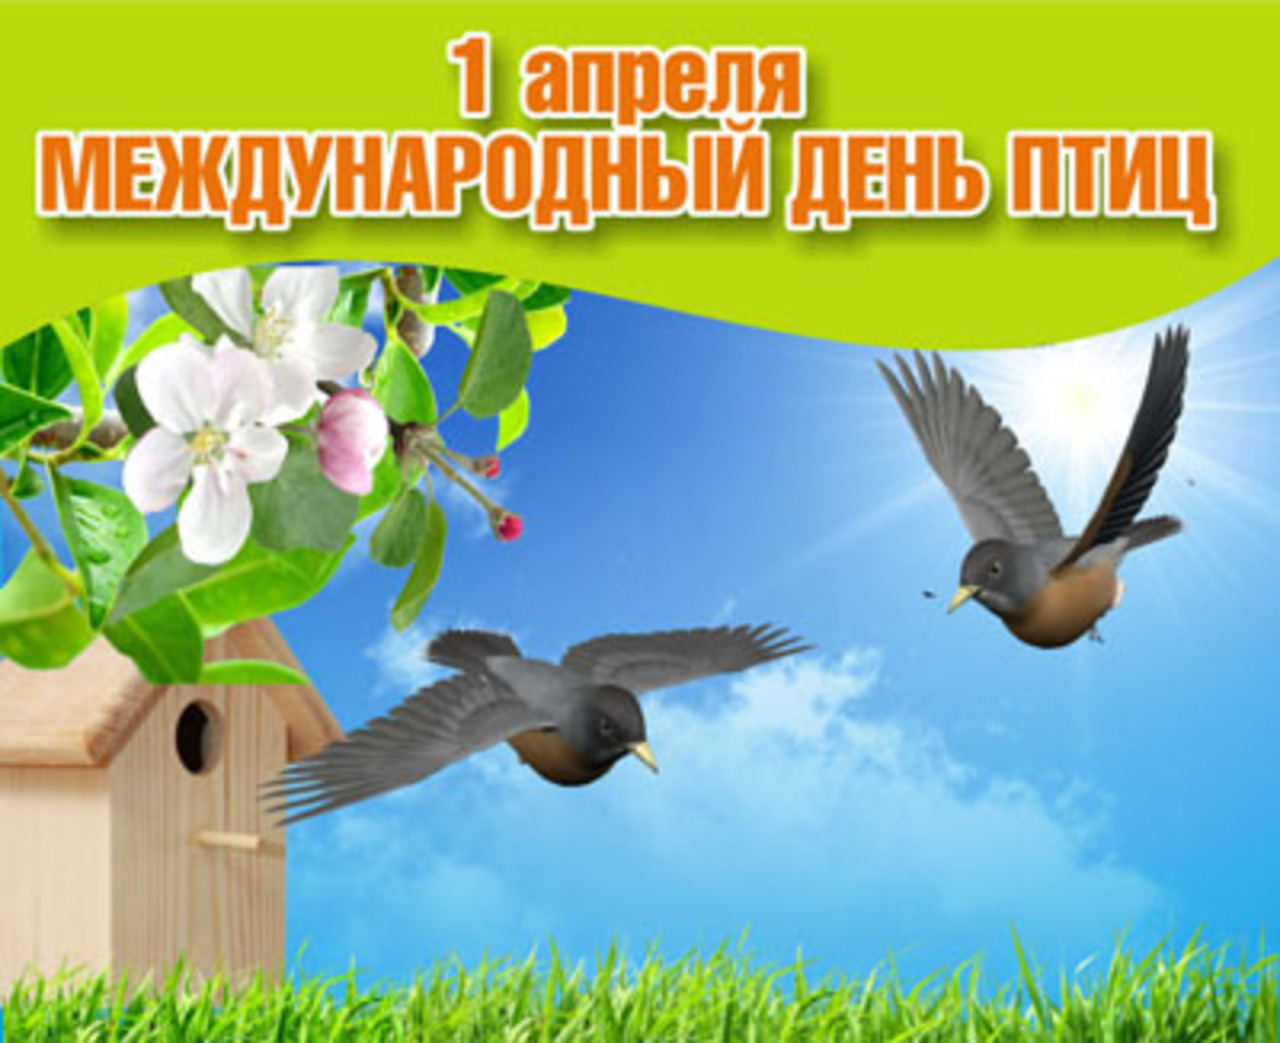 1 апреля всемирный день птиц. День птиц. Международный день птиц. День птиц картинки.